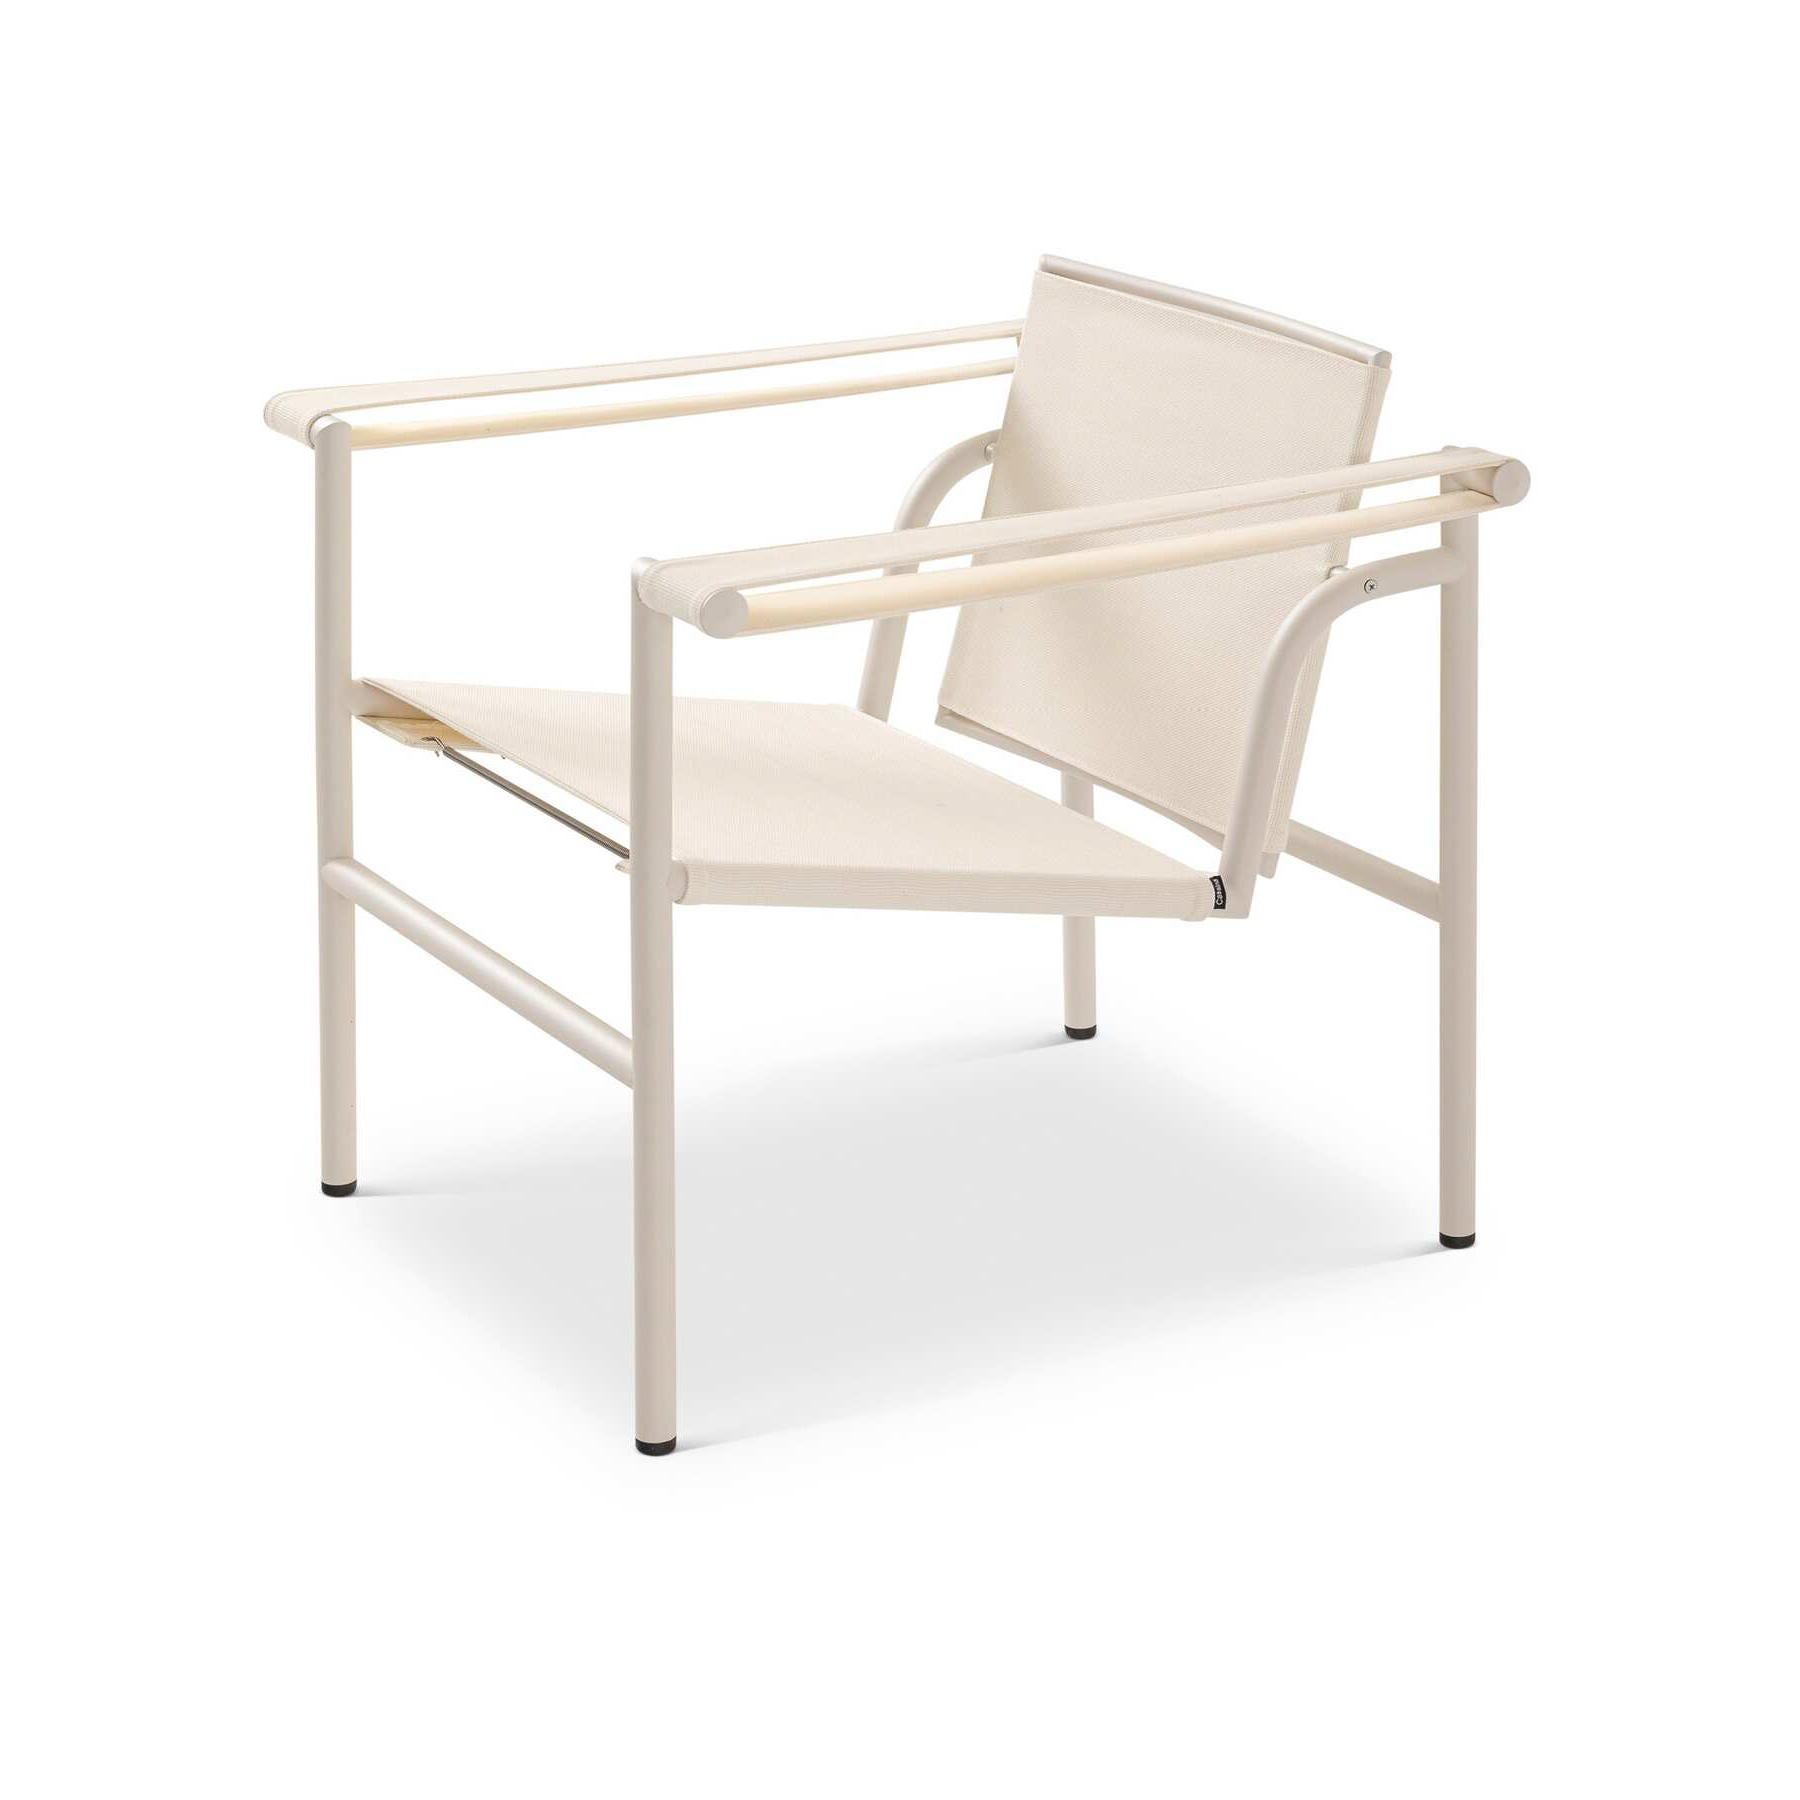 Chaise blanche LC1 de Le Corbusier, Pierre Jeanneret, Charlotte Perriand en 1928. Relancé en 1965.
Fabriqué par Cassina en Italie.

Une chaise légère et compacte conçue et présentée au Salon d'Automne de 1929 avec d'autres modèles importants, tels